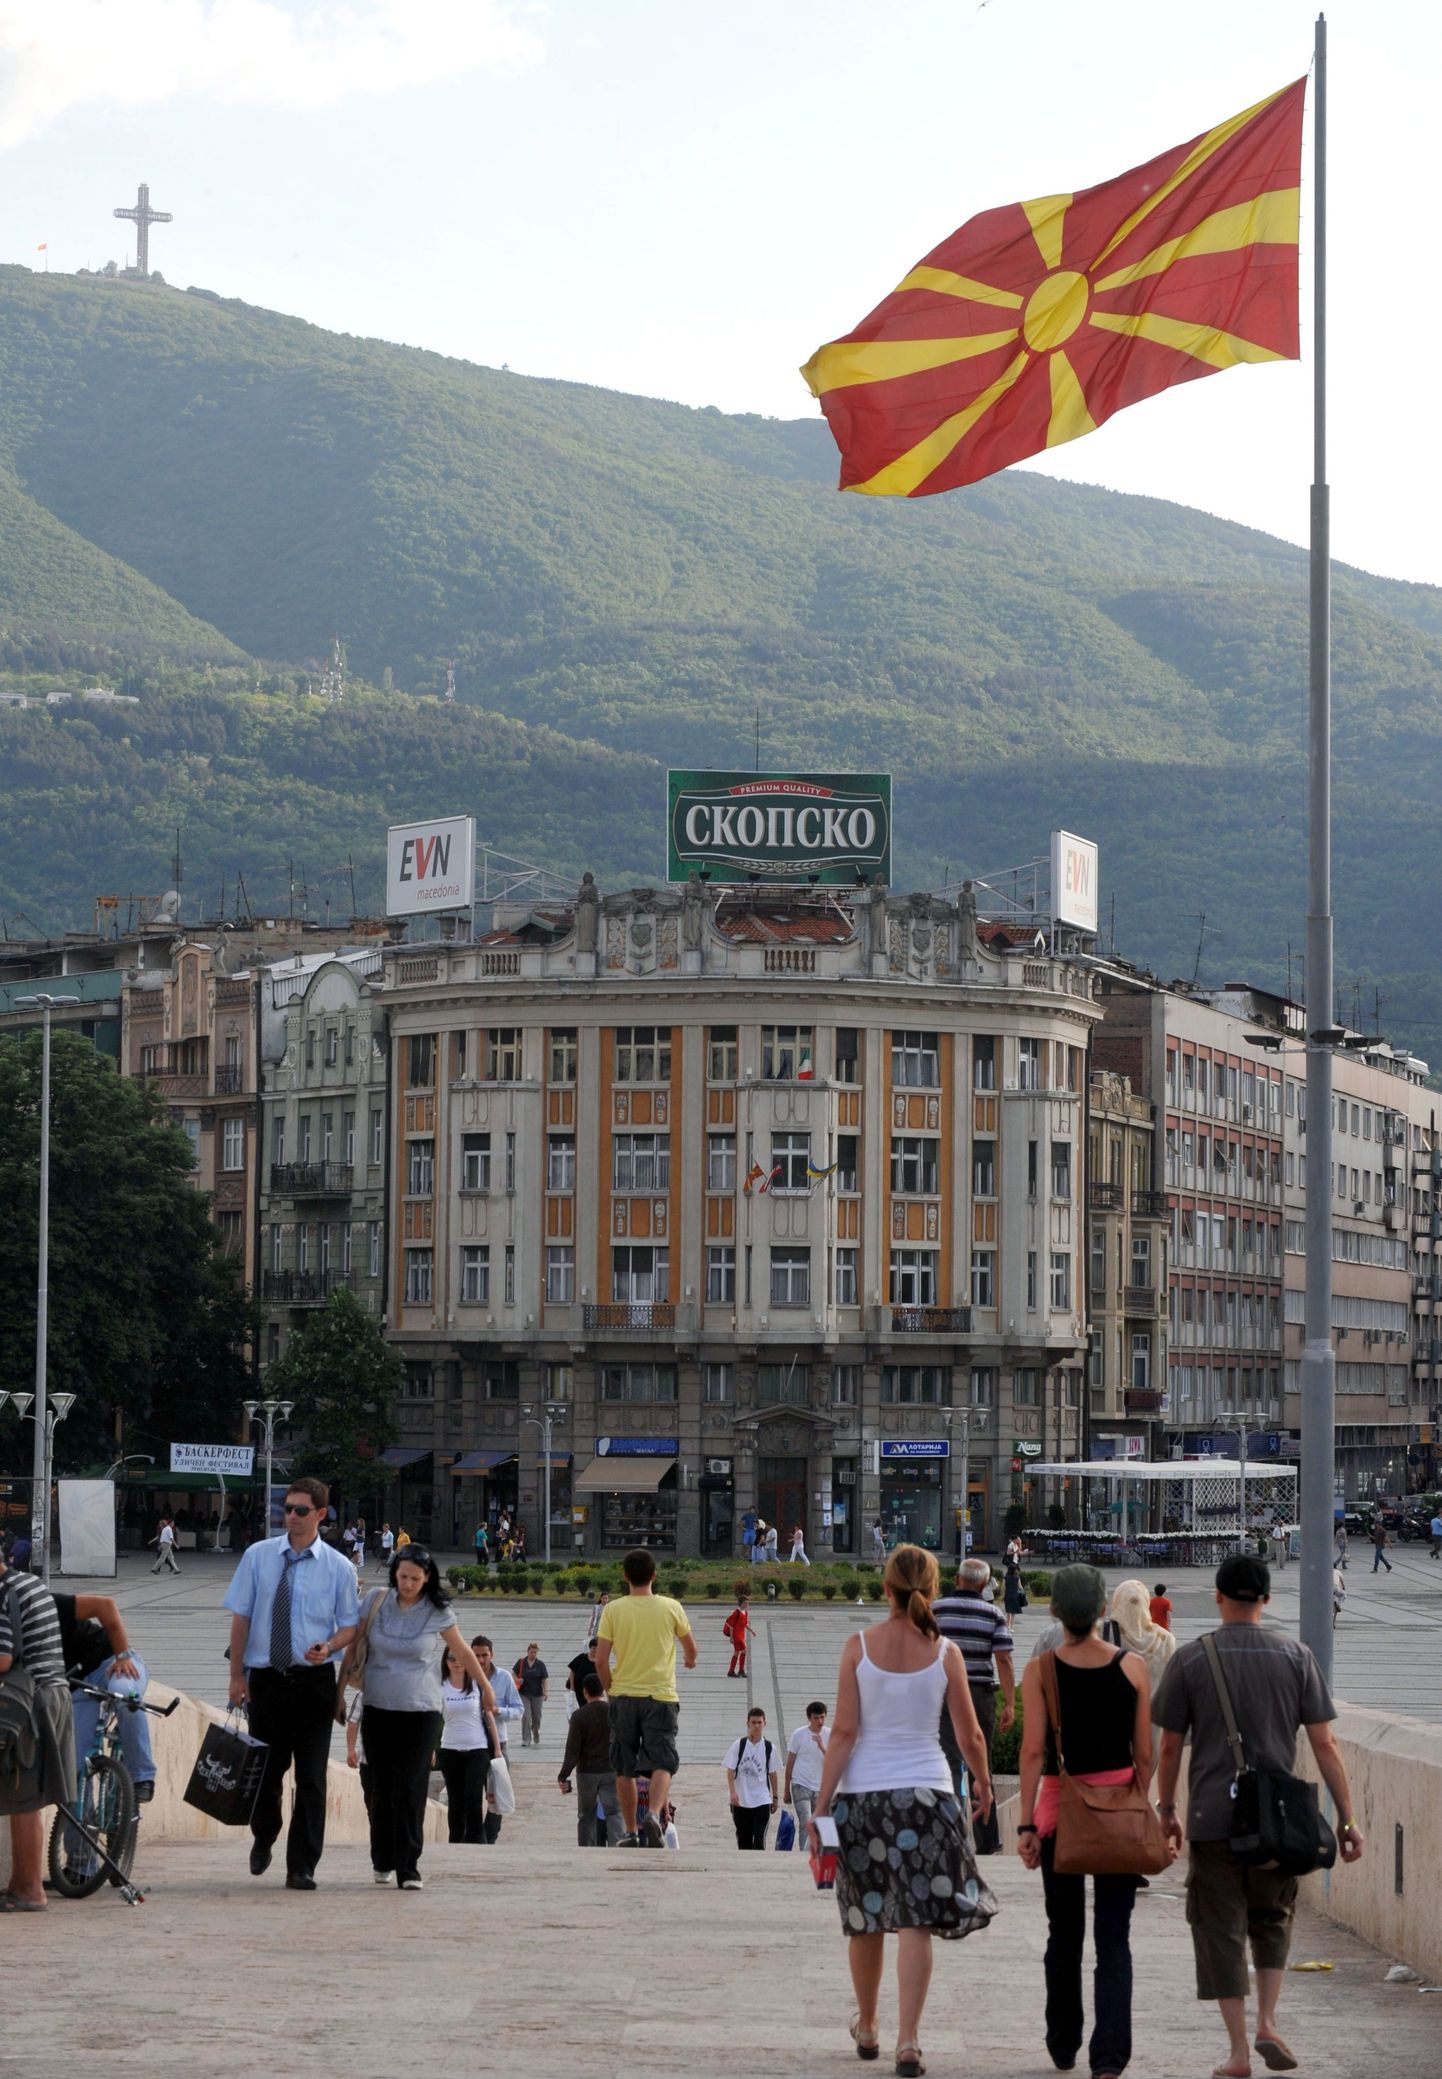 Aleksander Suure kuju kerkib Skopje Makedoonia väljakule, mille ümbruses pole ükski hoone nii kõrge, et saaks ajaloolise kangelase monumenti kuidagi varjutada.